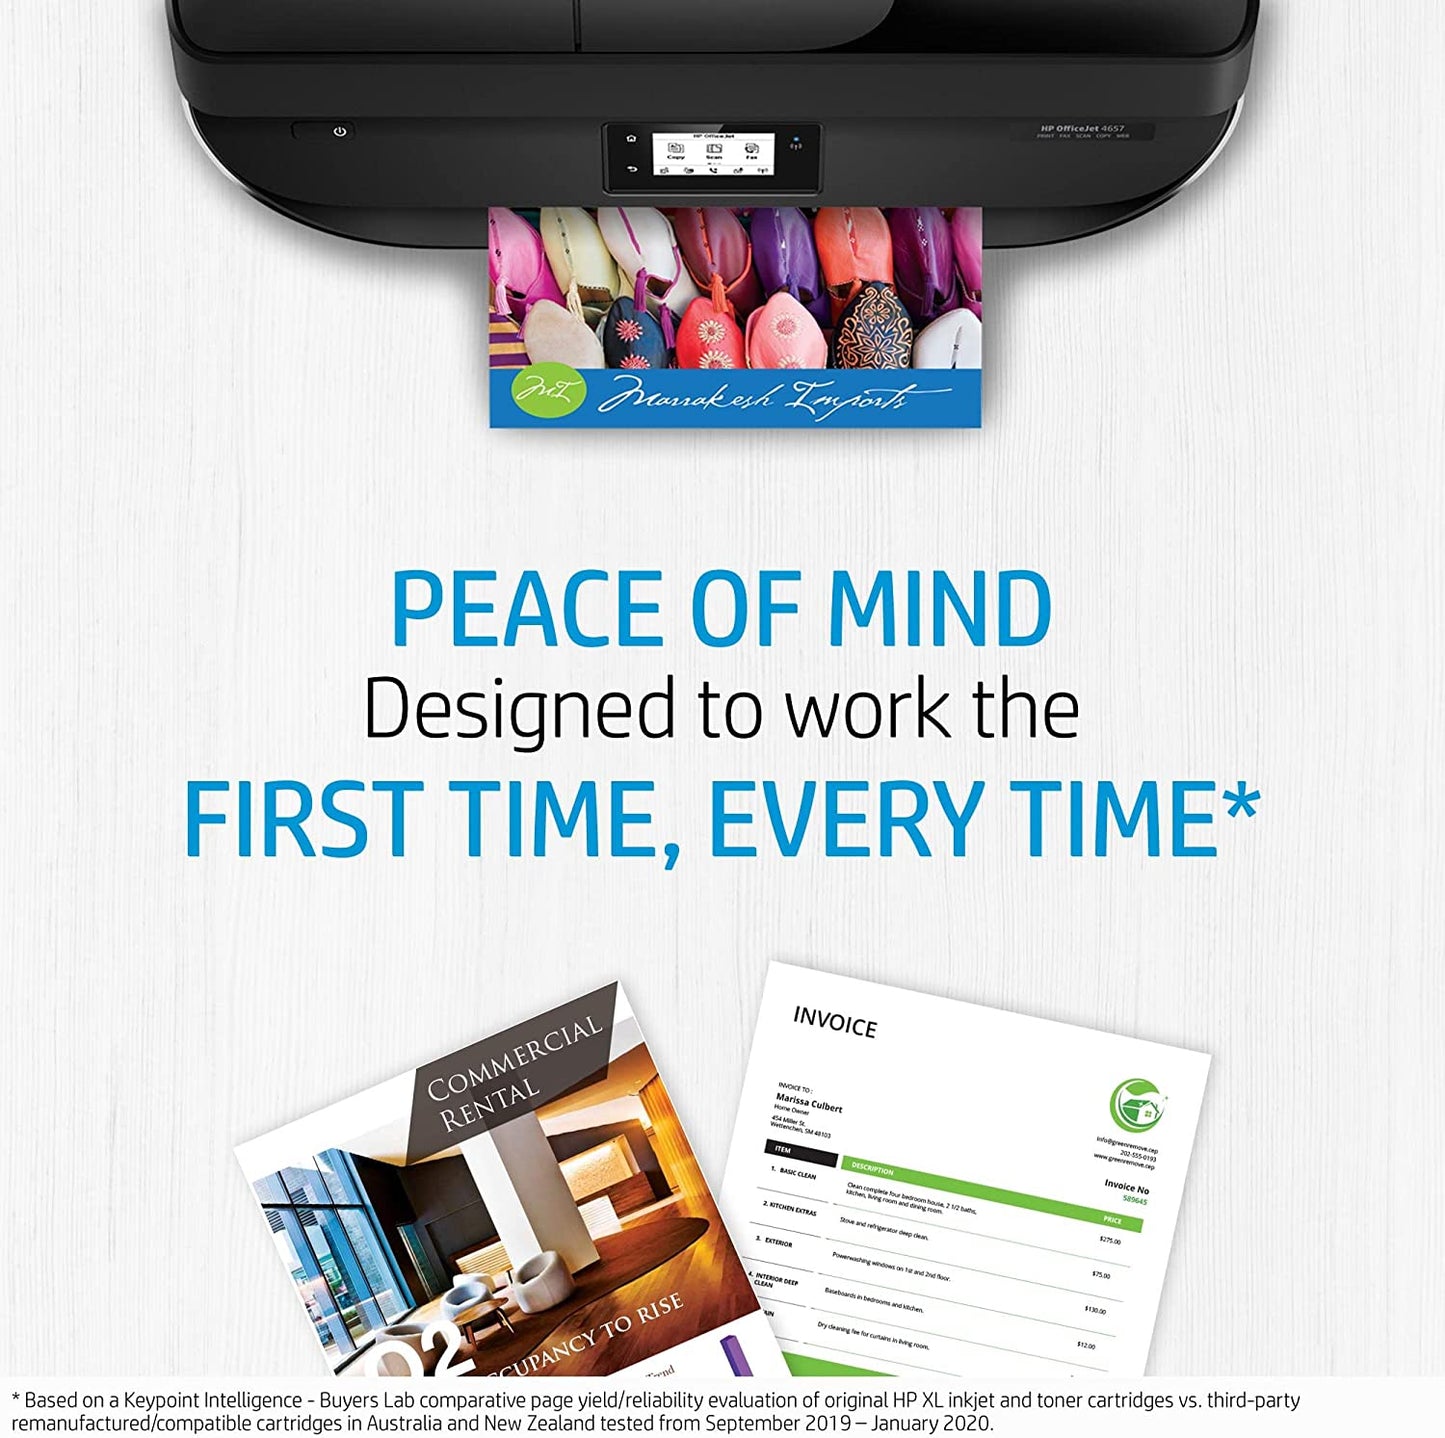 HP 63 Genuine Original Black Printer Ink Cartridge works with HP OfficeJet 4600, 5200, HP DeskJet 2100, 3600 and HP ENVY 4500 Series